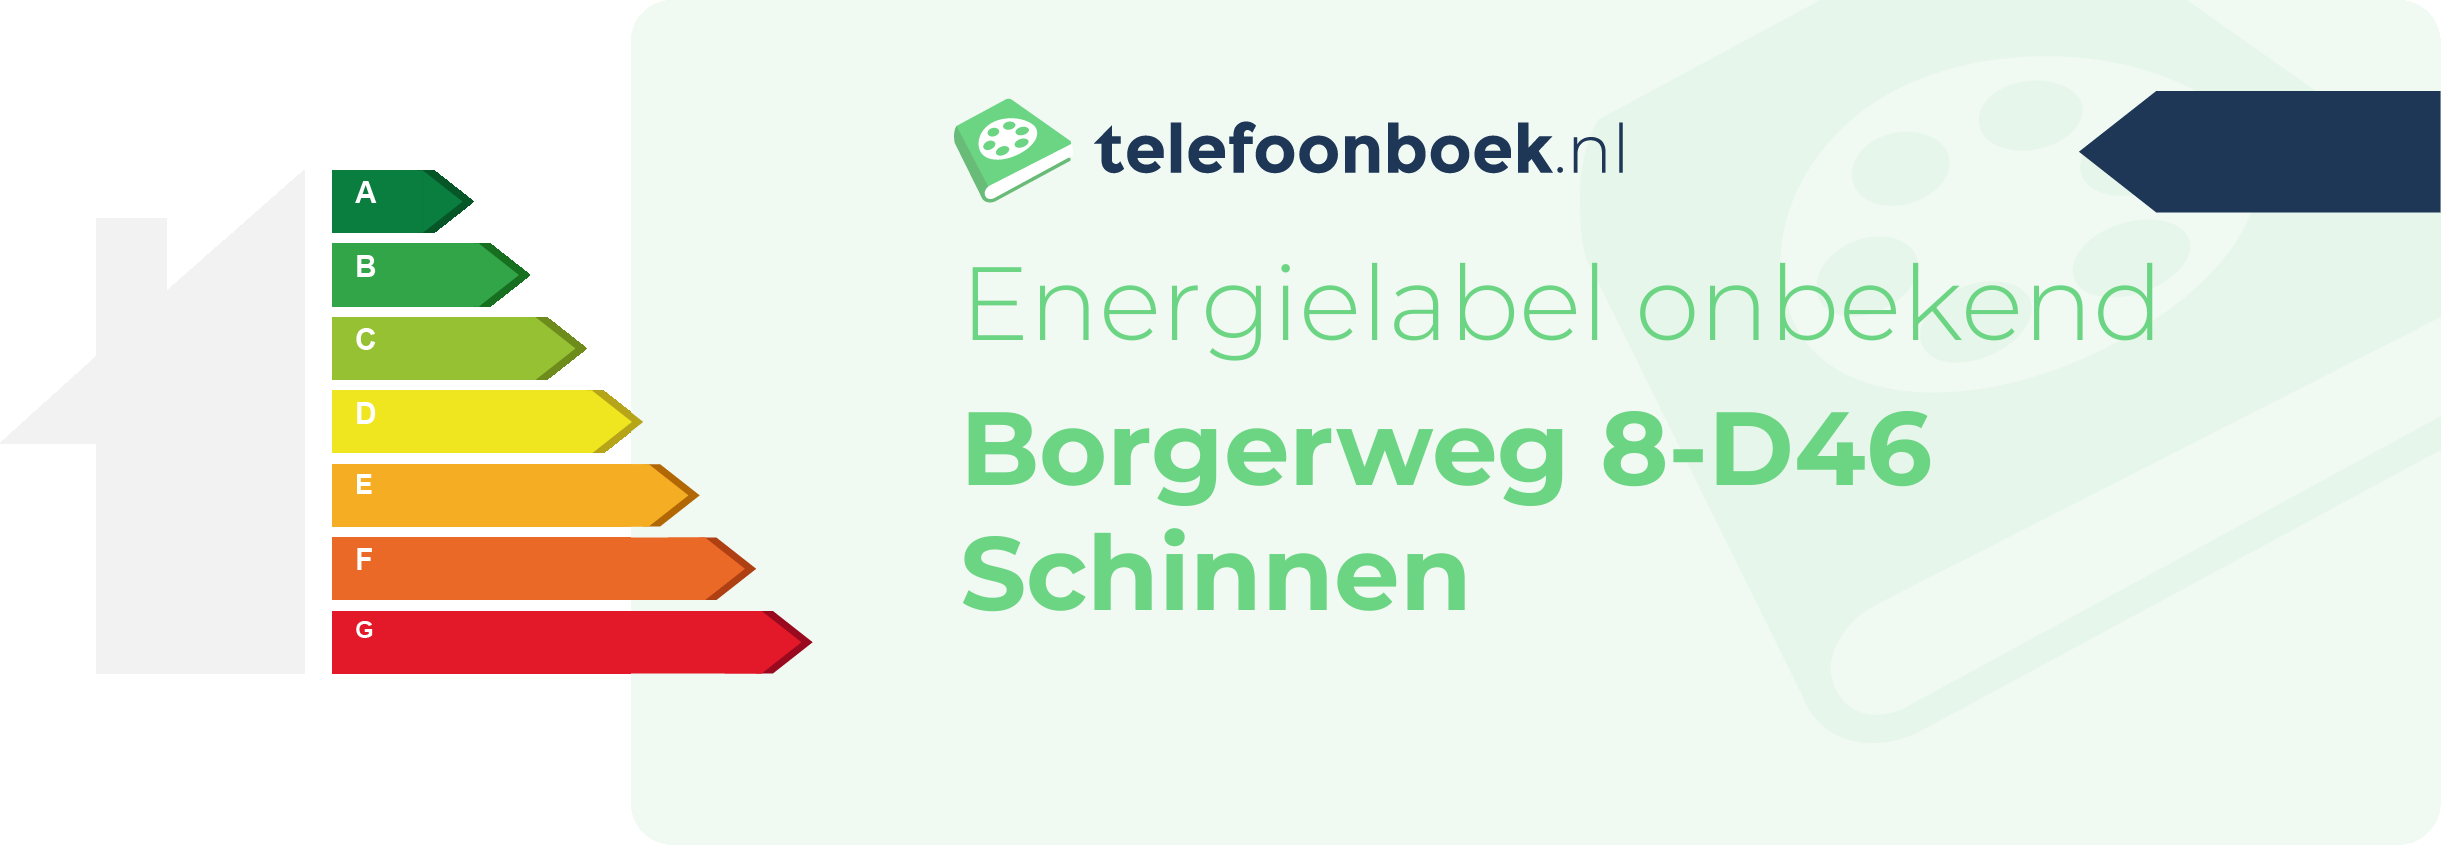 Energielabel Borgerweg 8-D46 Schinnen